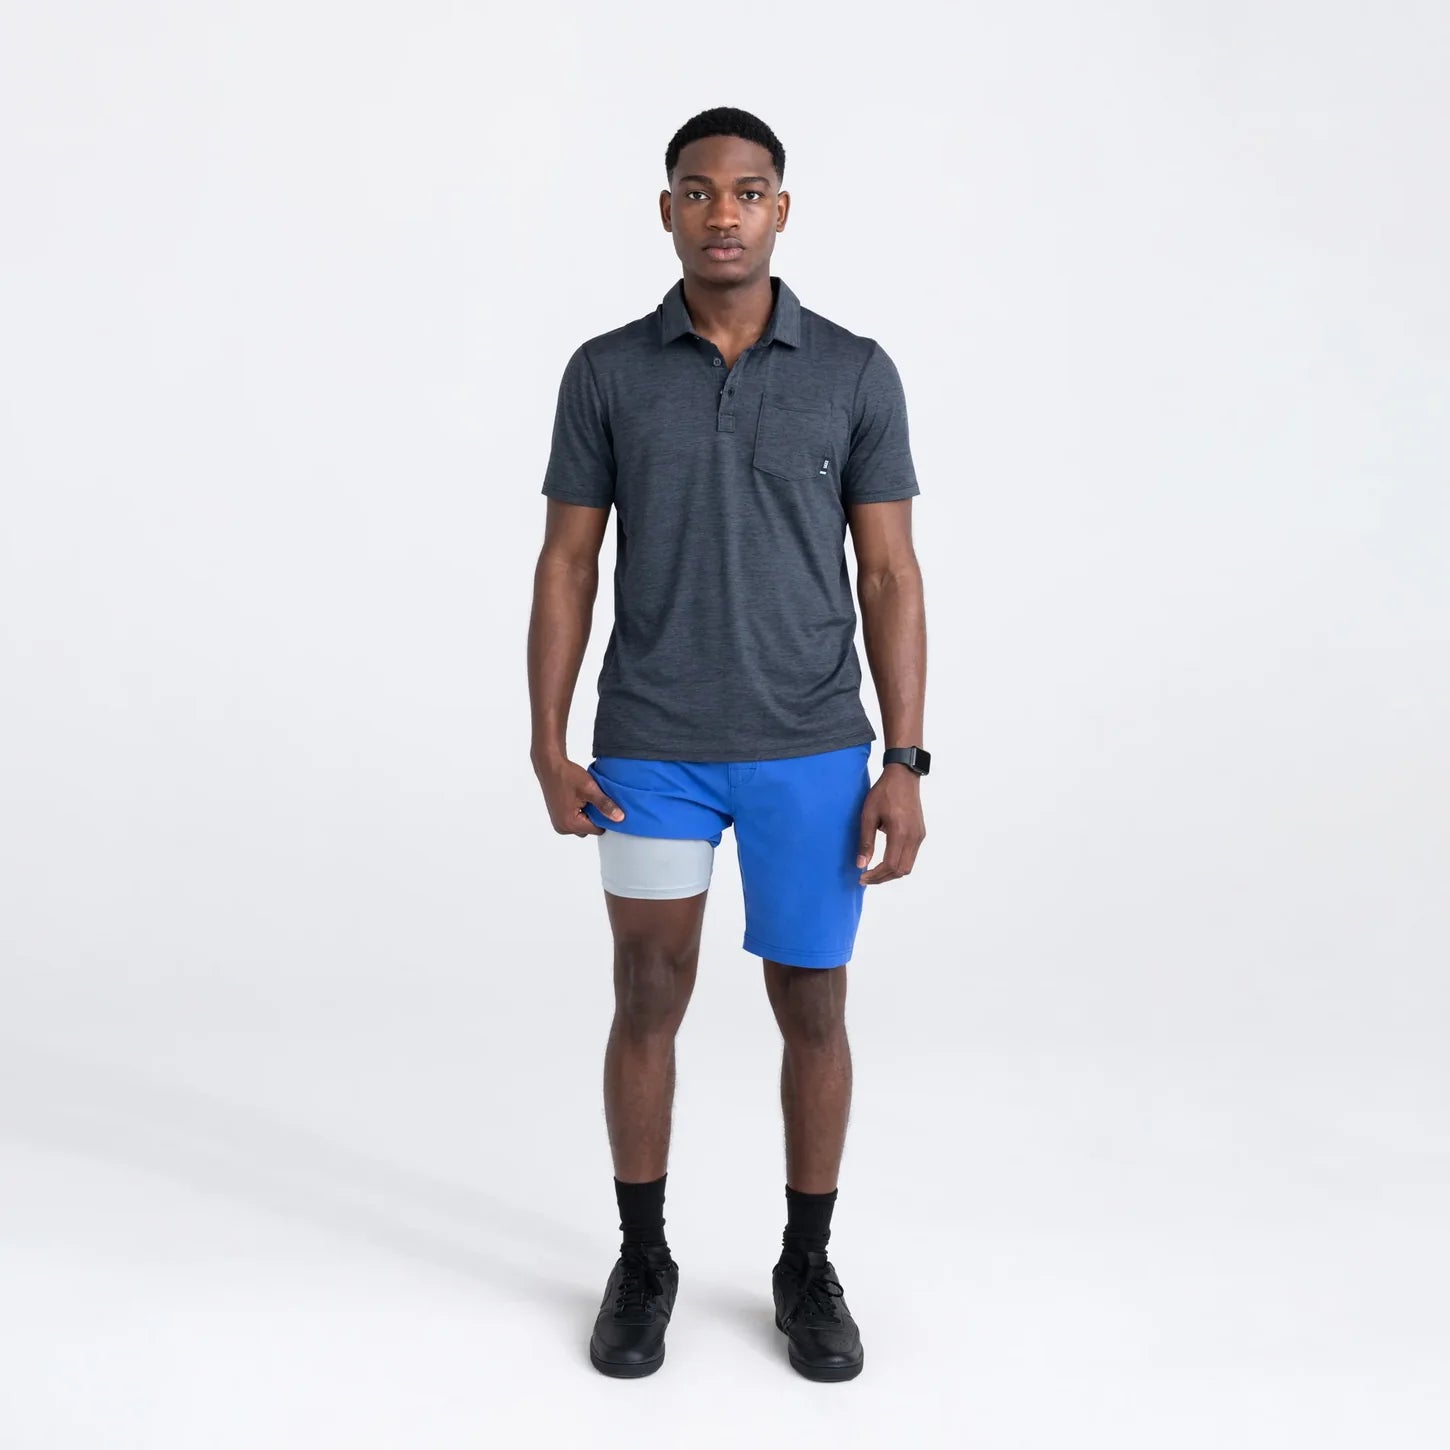 SAXX Go to Town 2N1 9" Shorts - Sport Blue